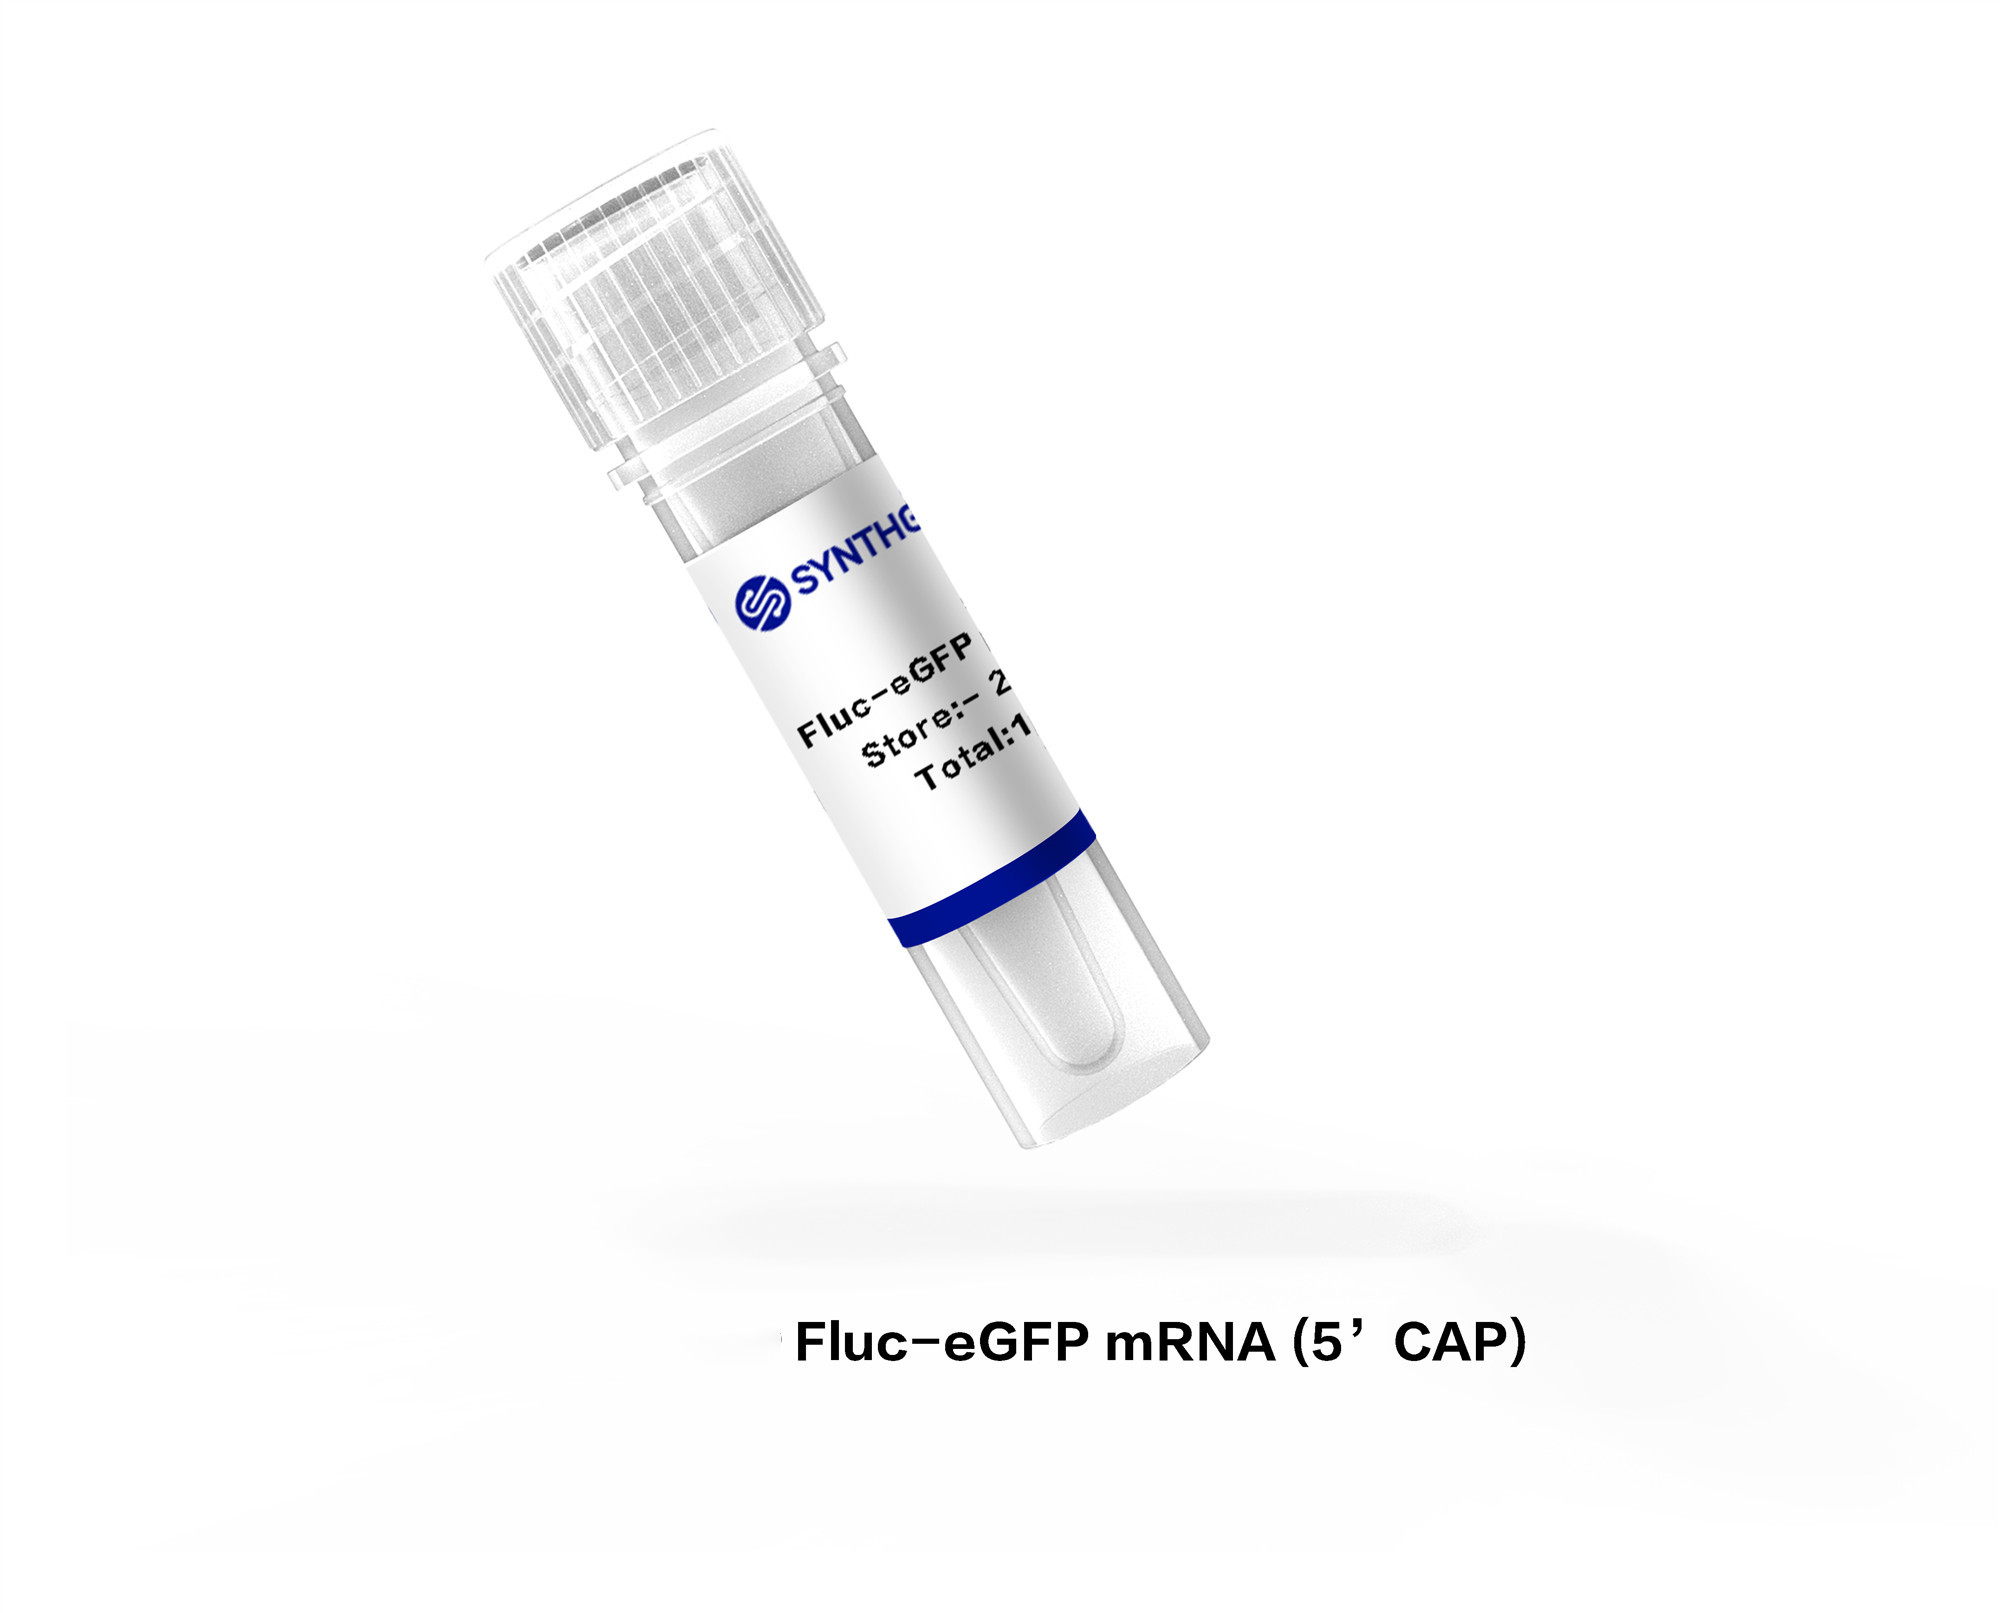 Fluc-eGFP mRNA (5’CAP)